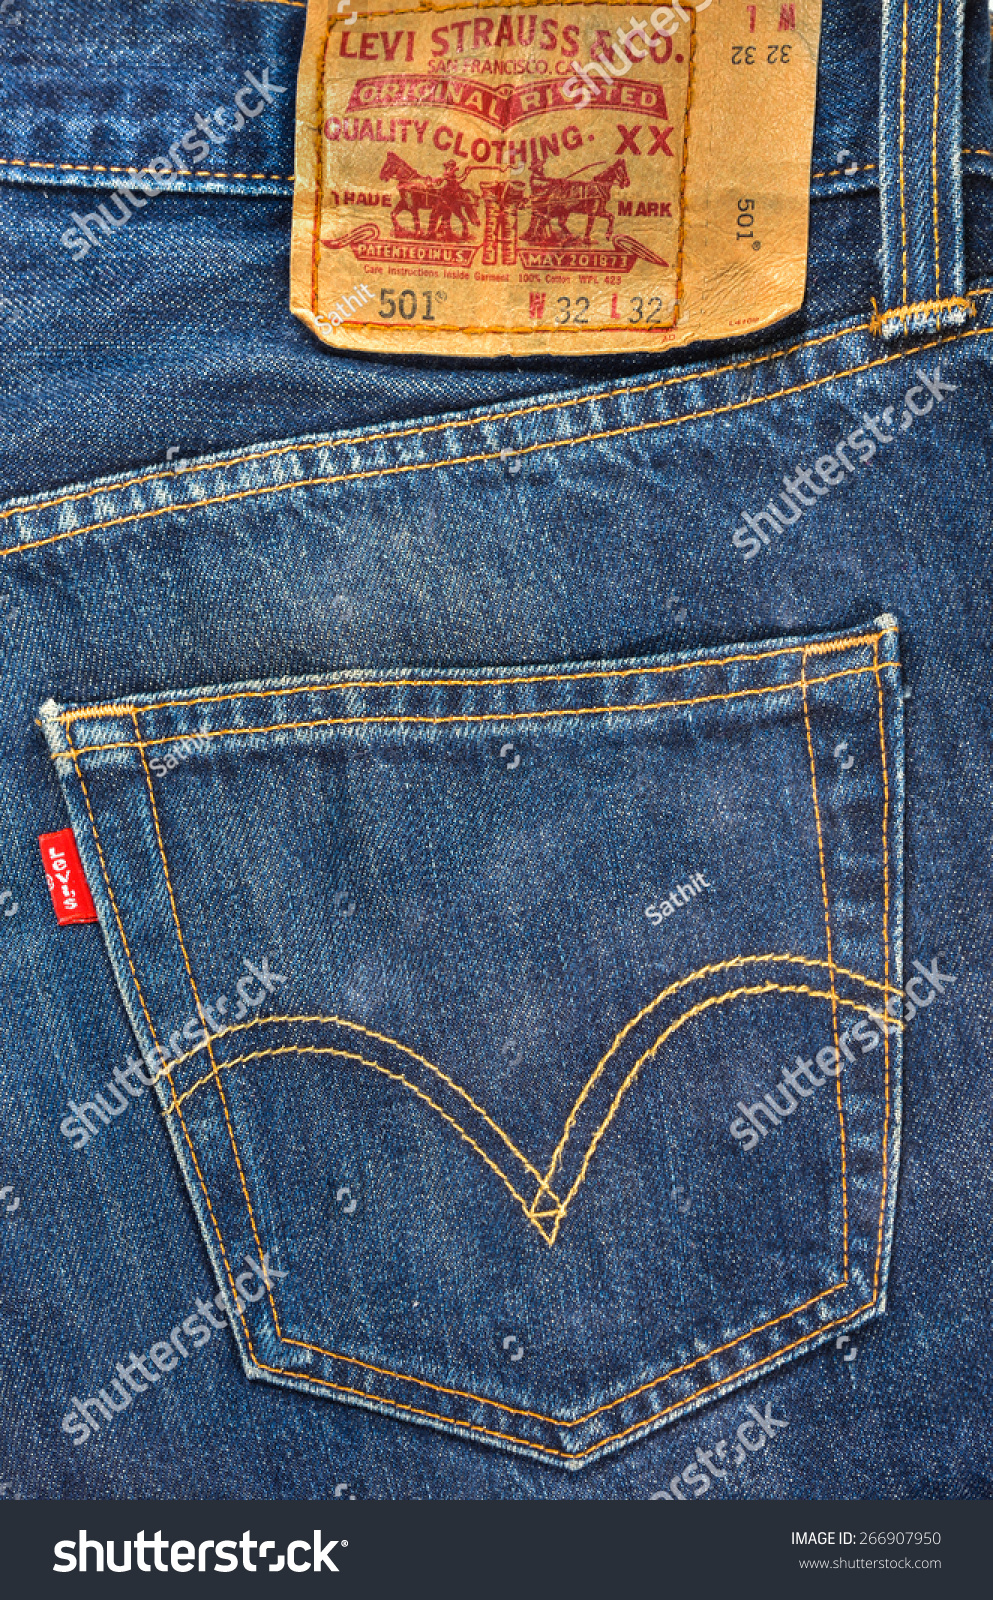 levis jeans 5011